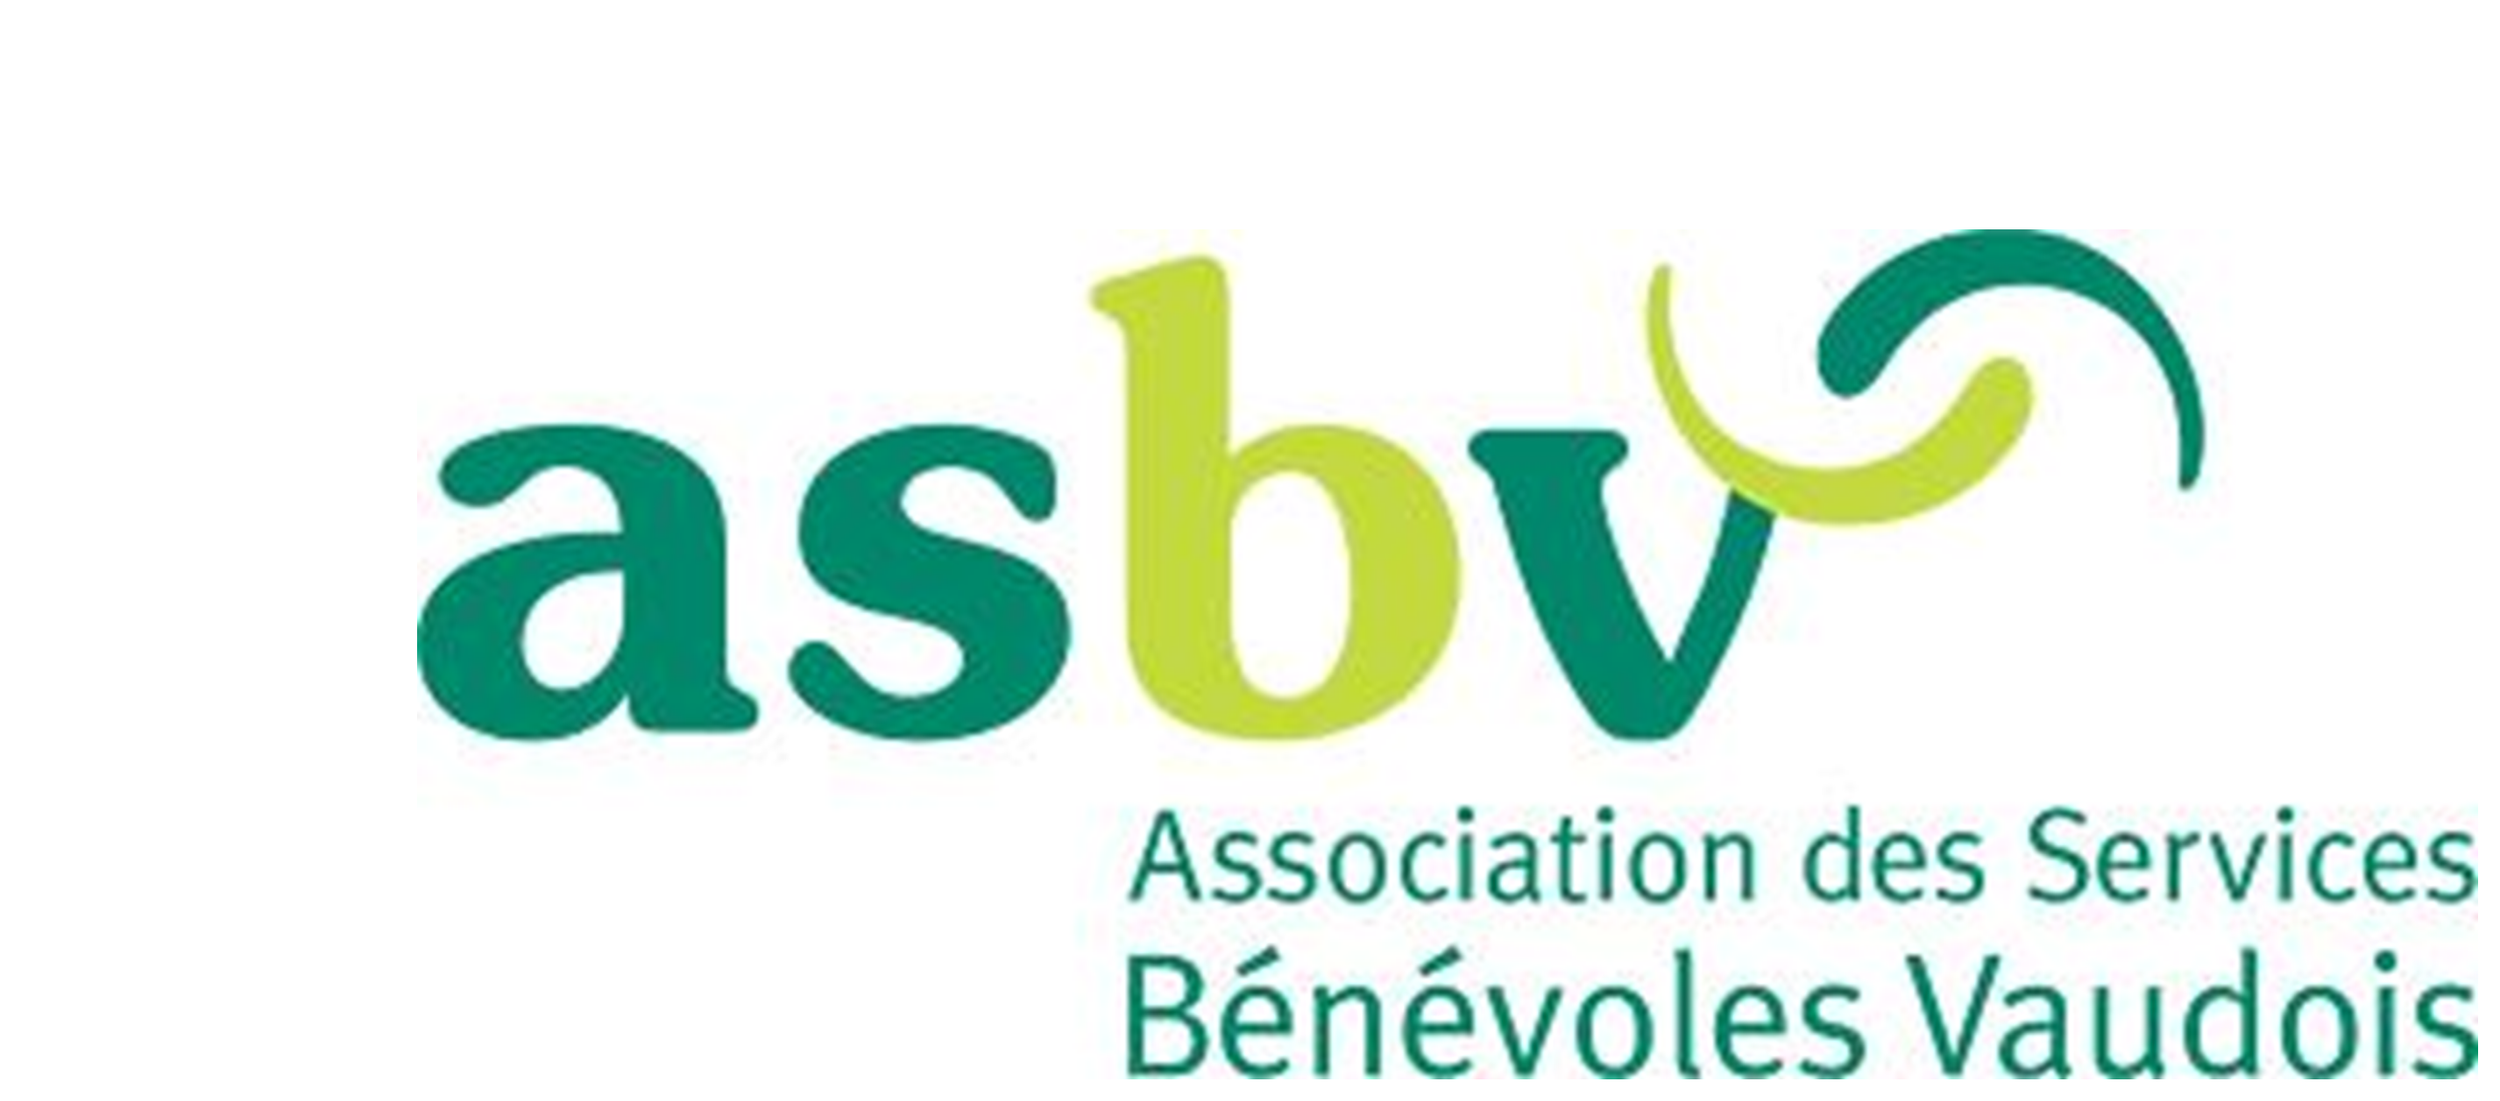 ASBV 2 logo.png